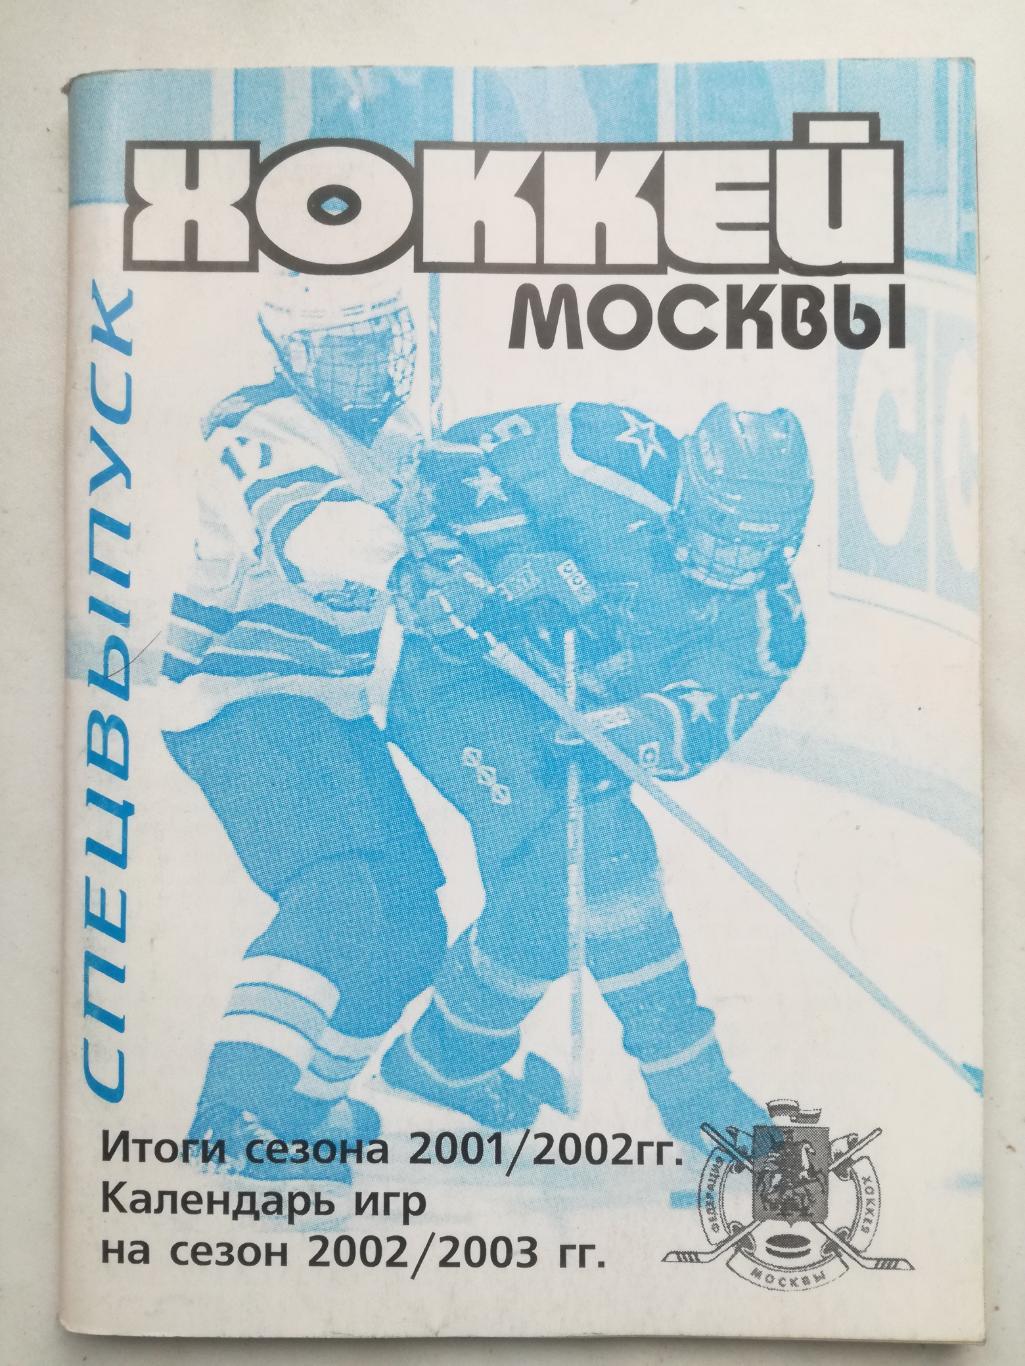 Хоккей Москвы 1999 2000 2001 2002 2003. Три выпуска 1